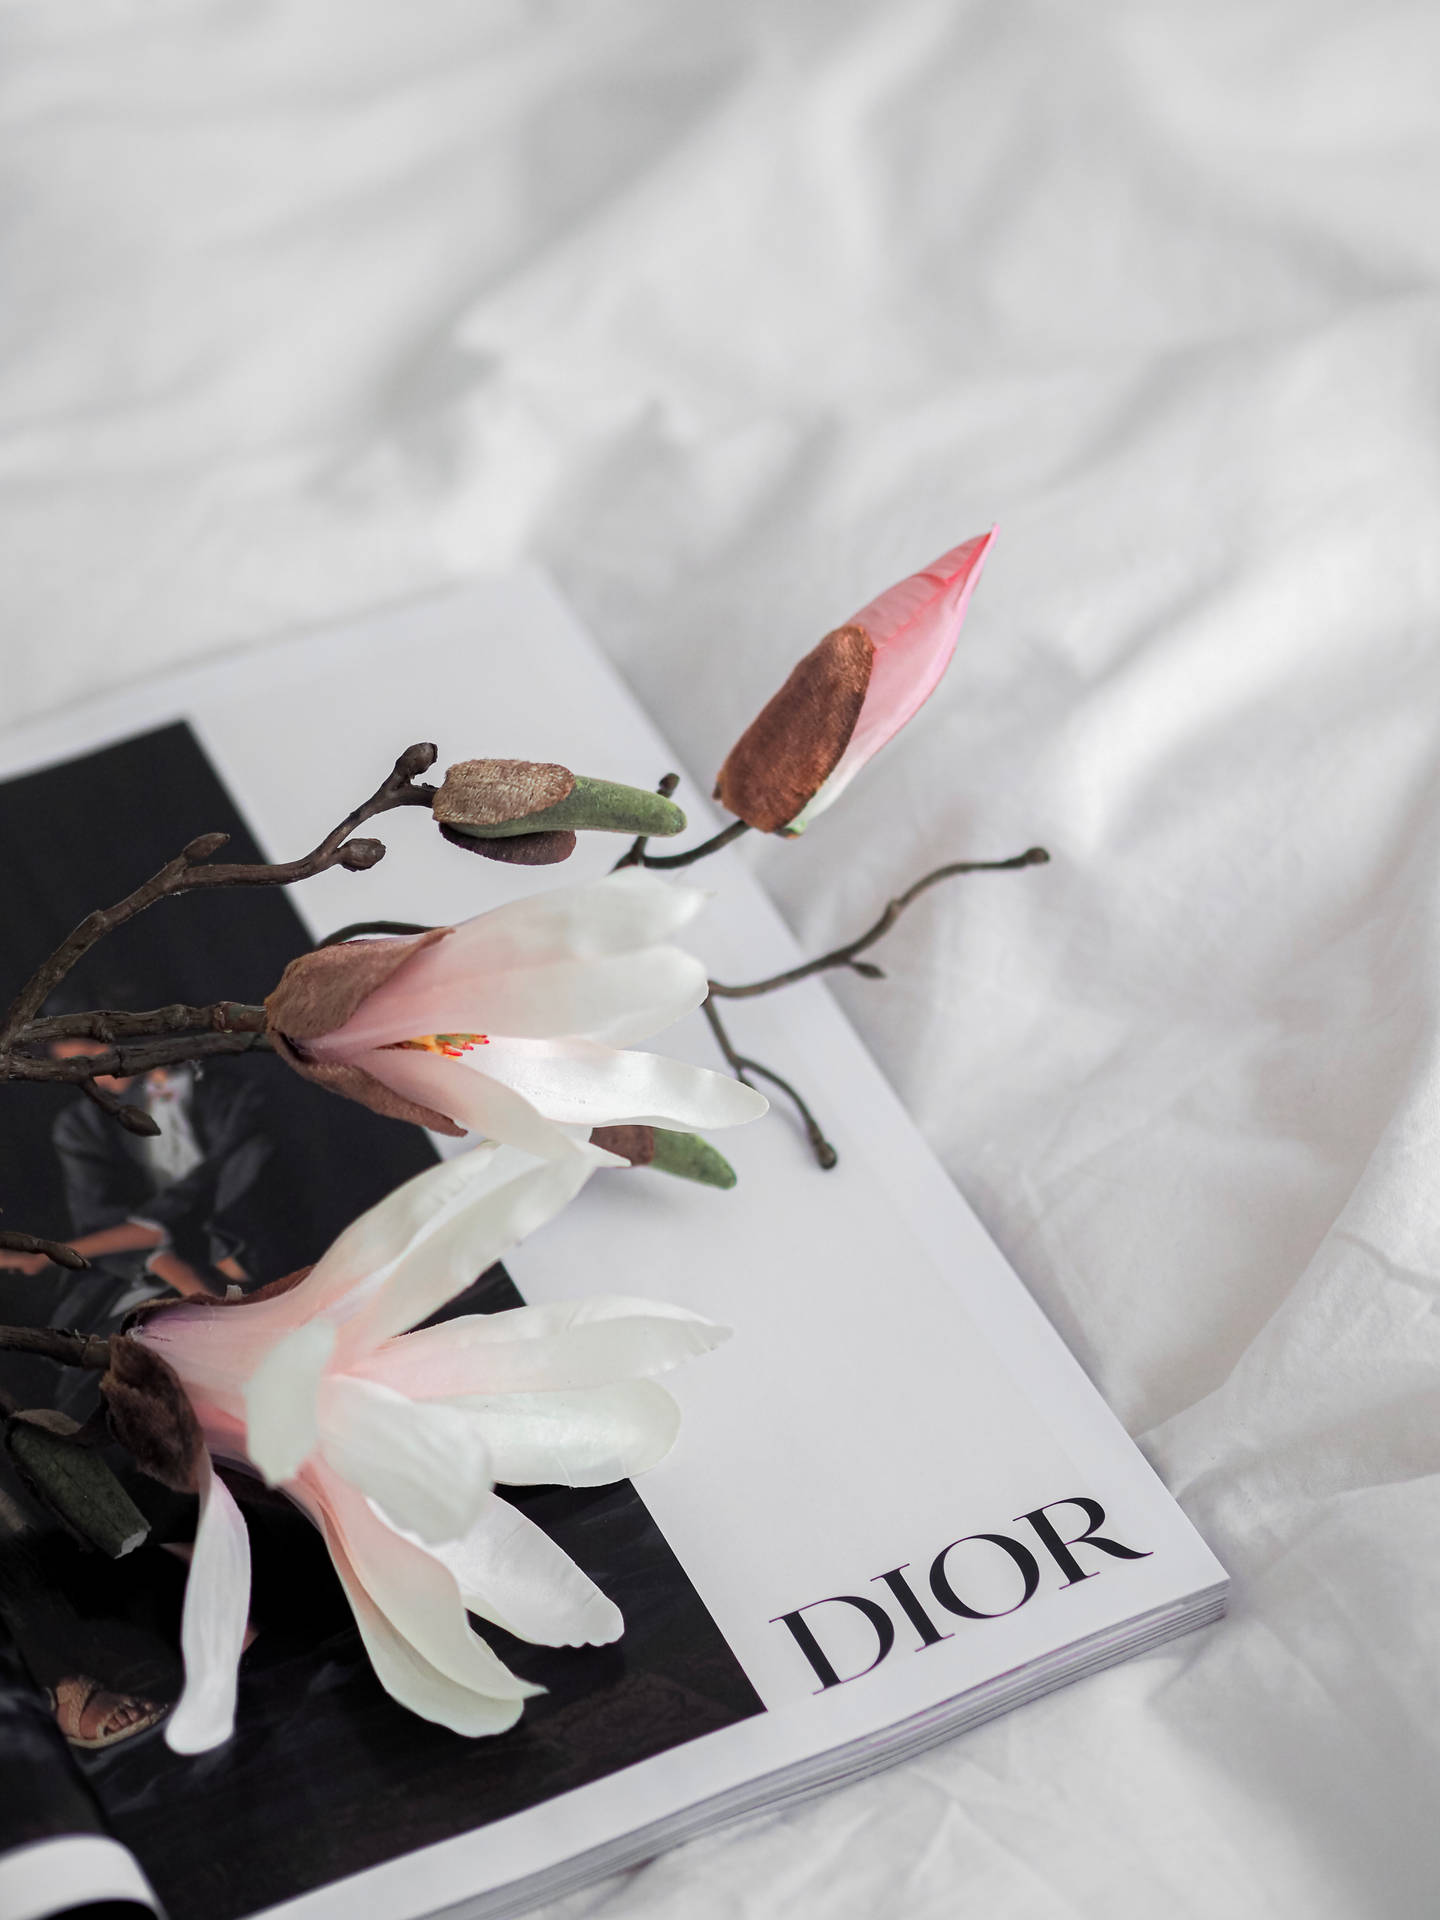 Dior Magnolia Flower